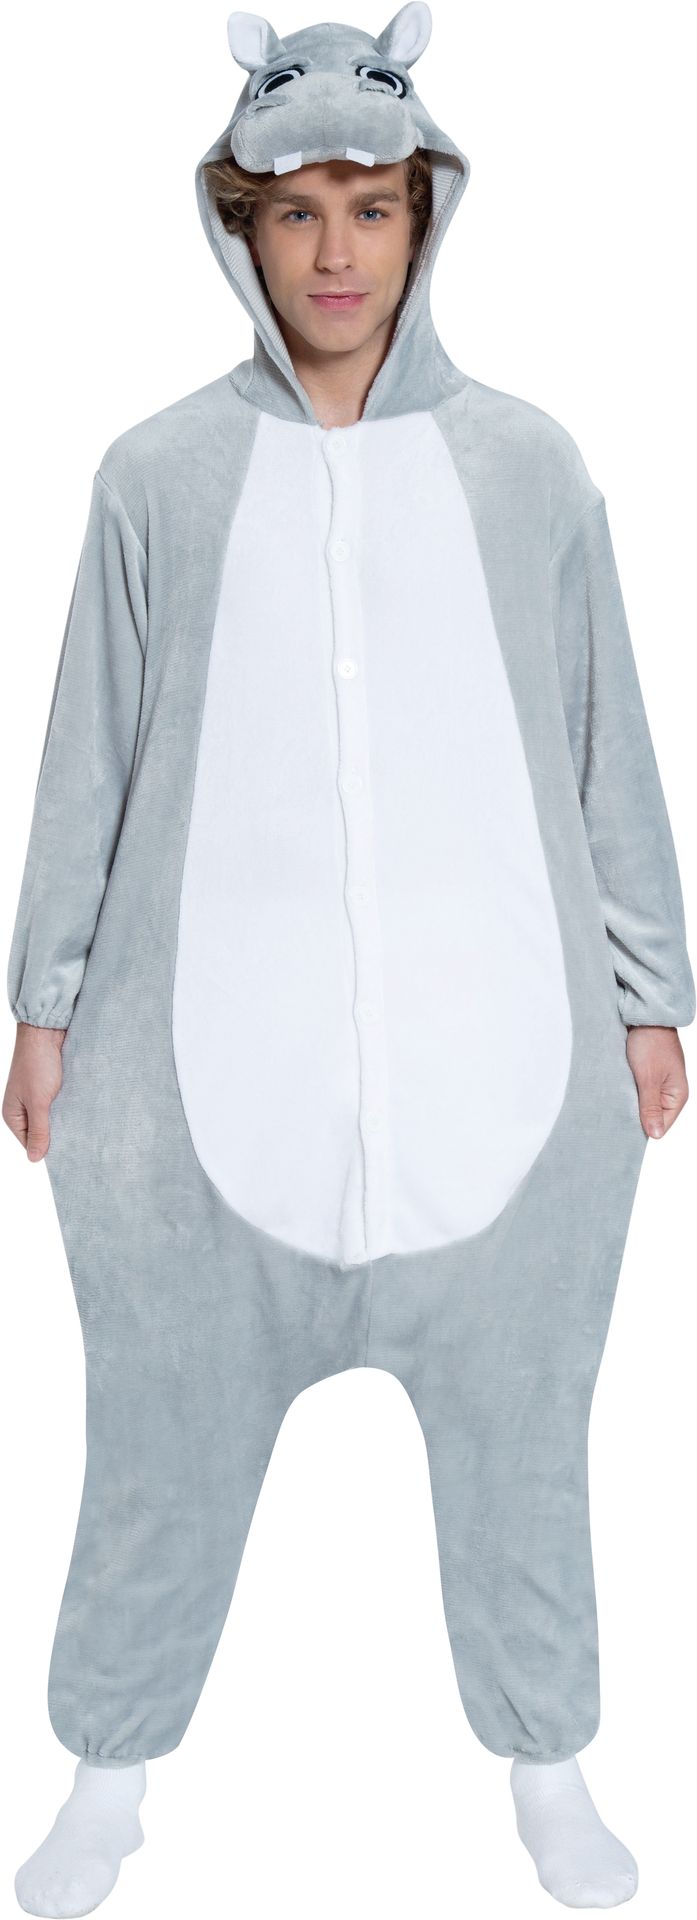 Nijlpaard outfit